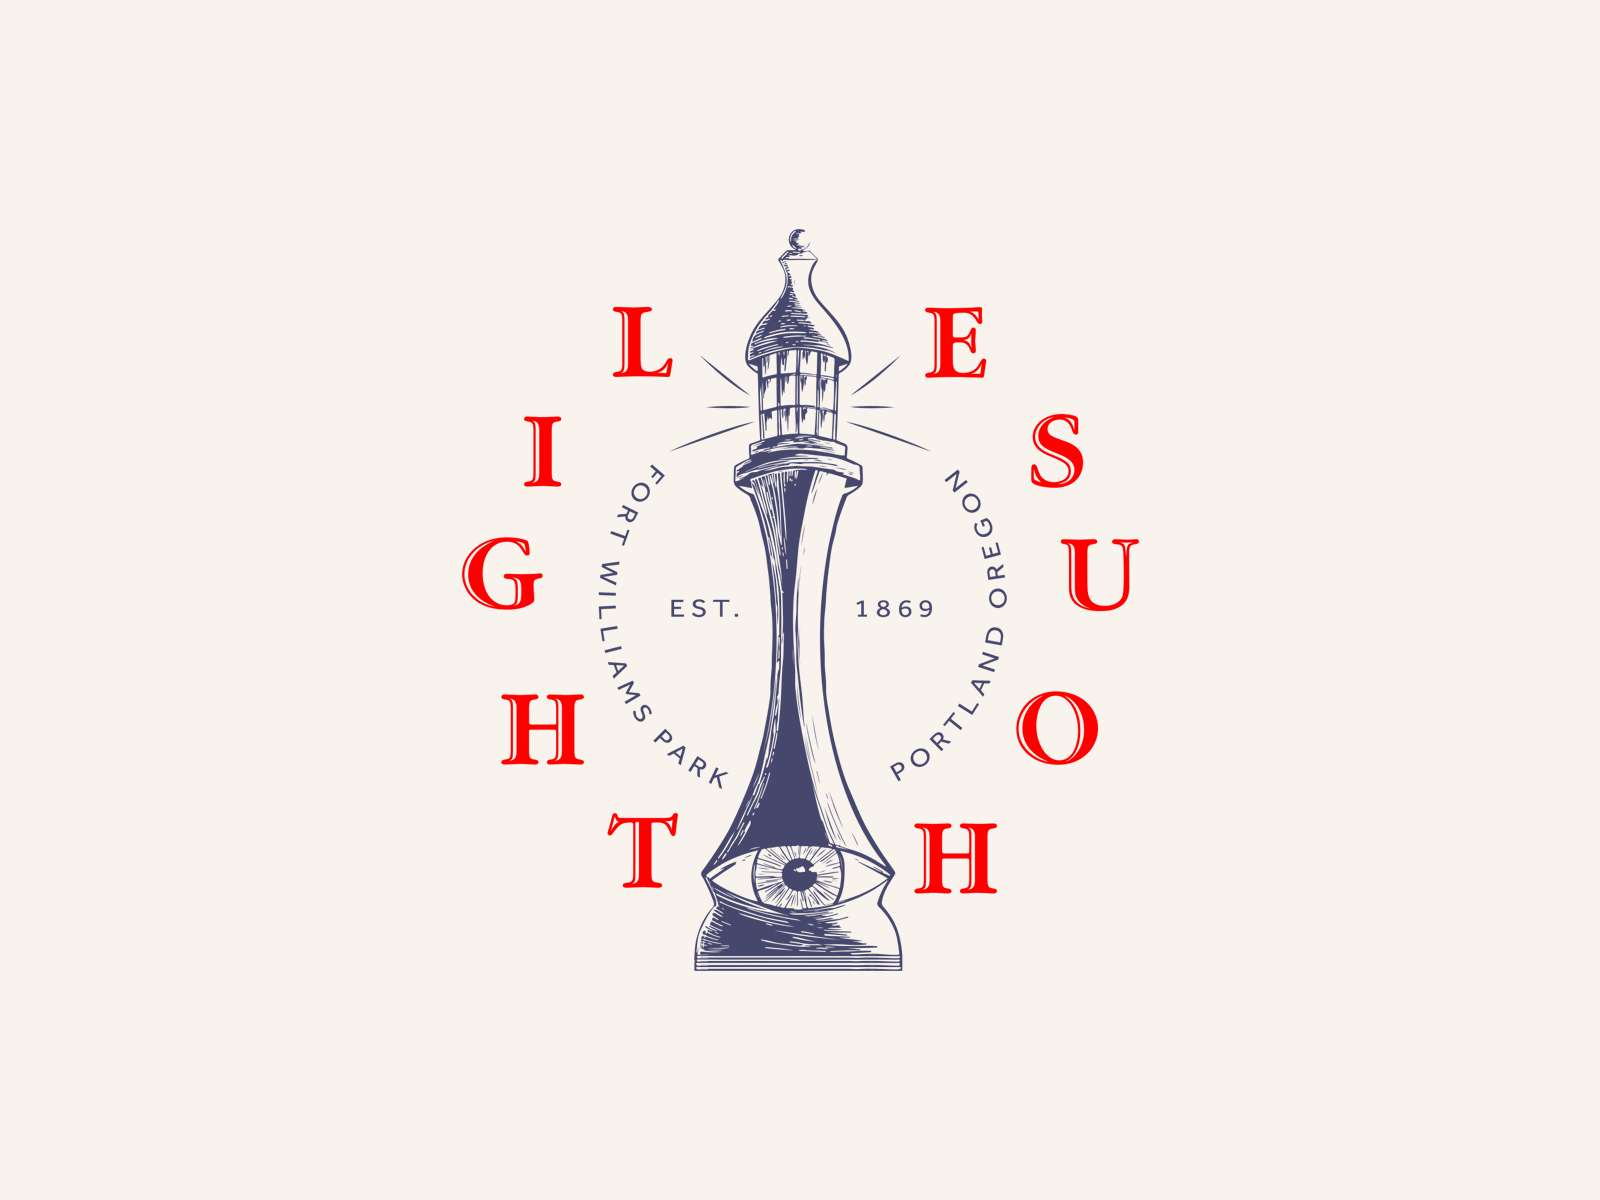 Light house brand brand design branding design graphicdesign icon design illustration logo logodesign stamps